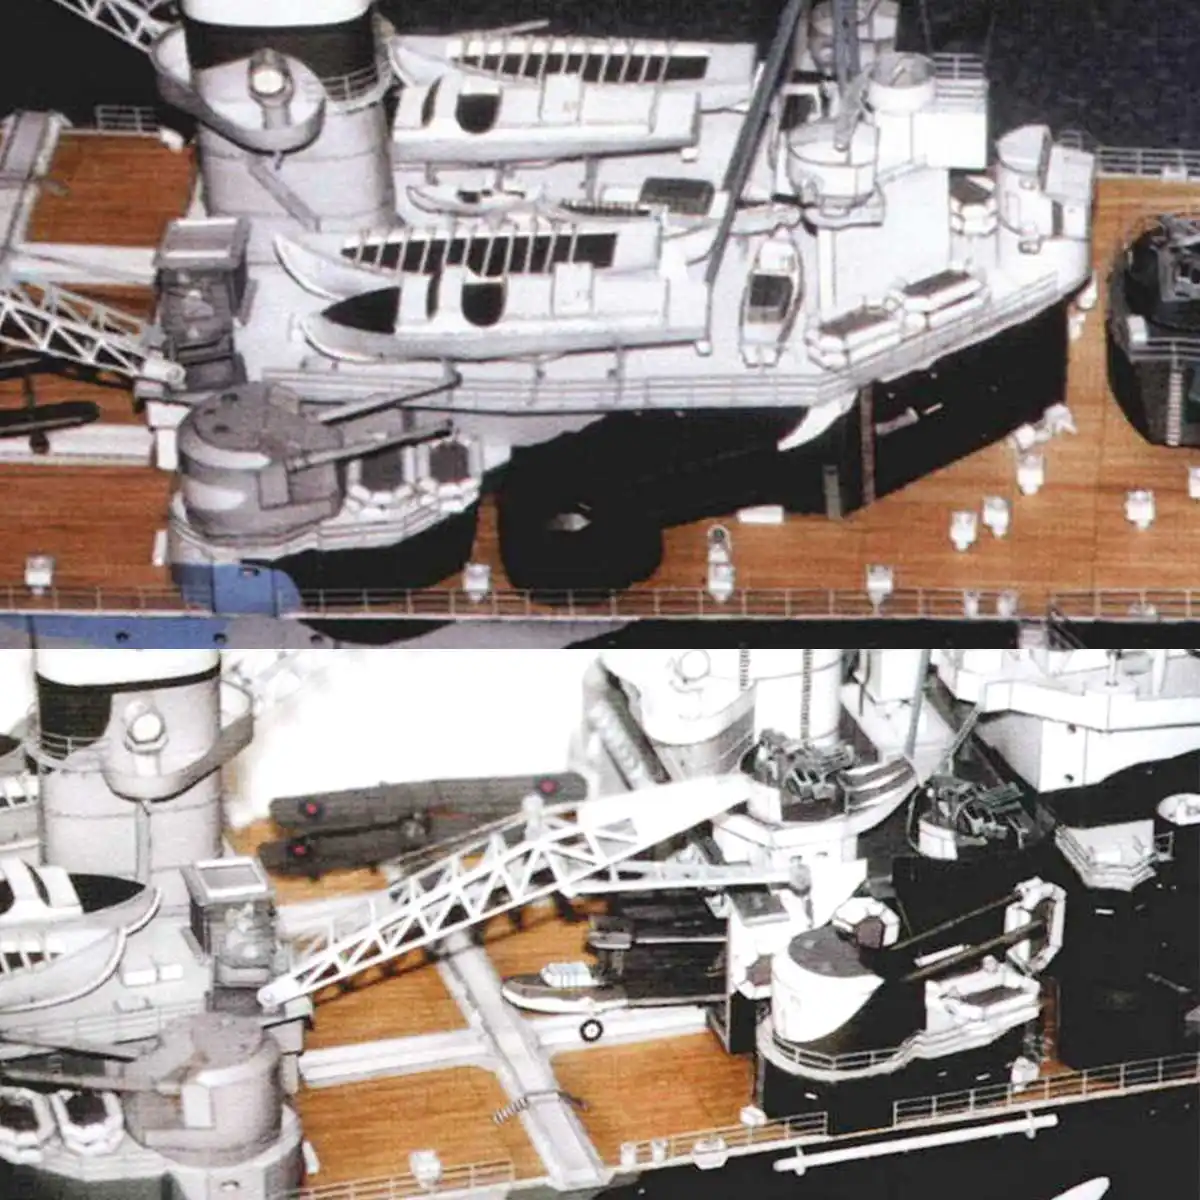 1:200 1/200 линкор DIY большой 3D Бумажная военная модель корабль британских линкоров вальского корабля игрушка для детей подарки ручной работы